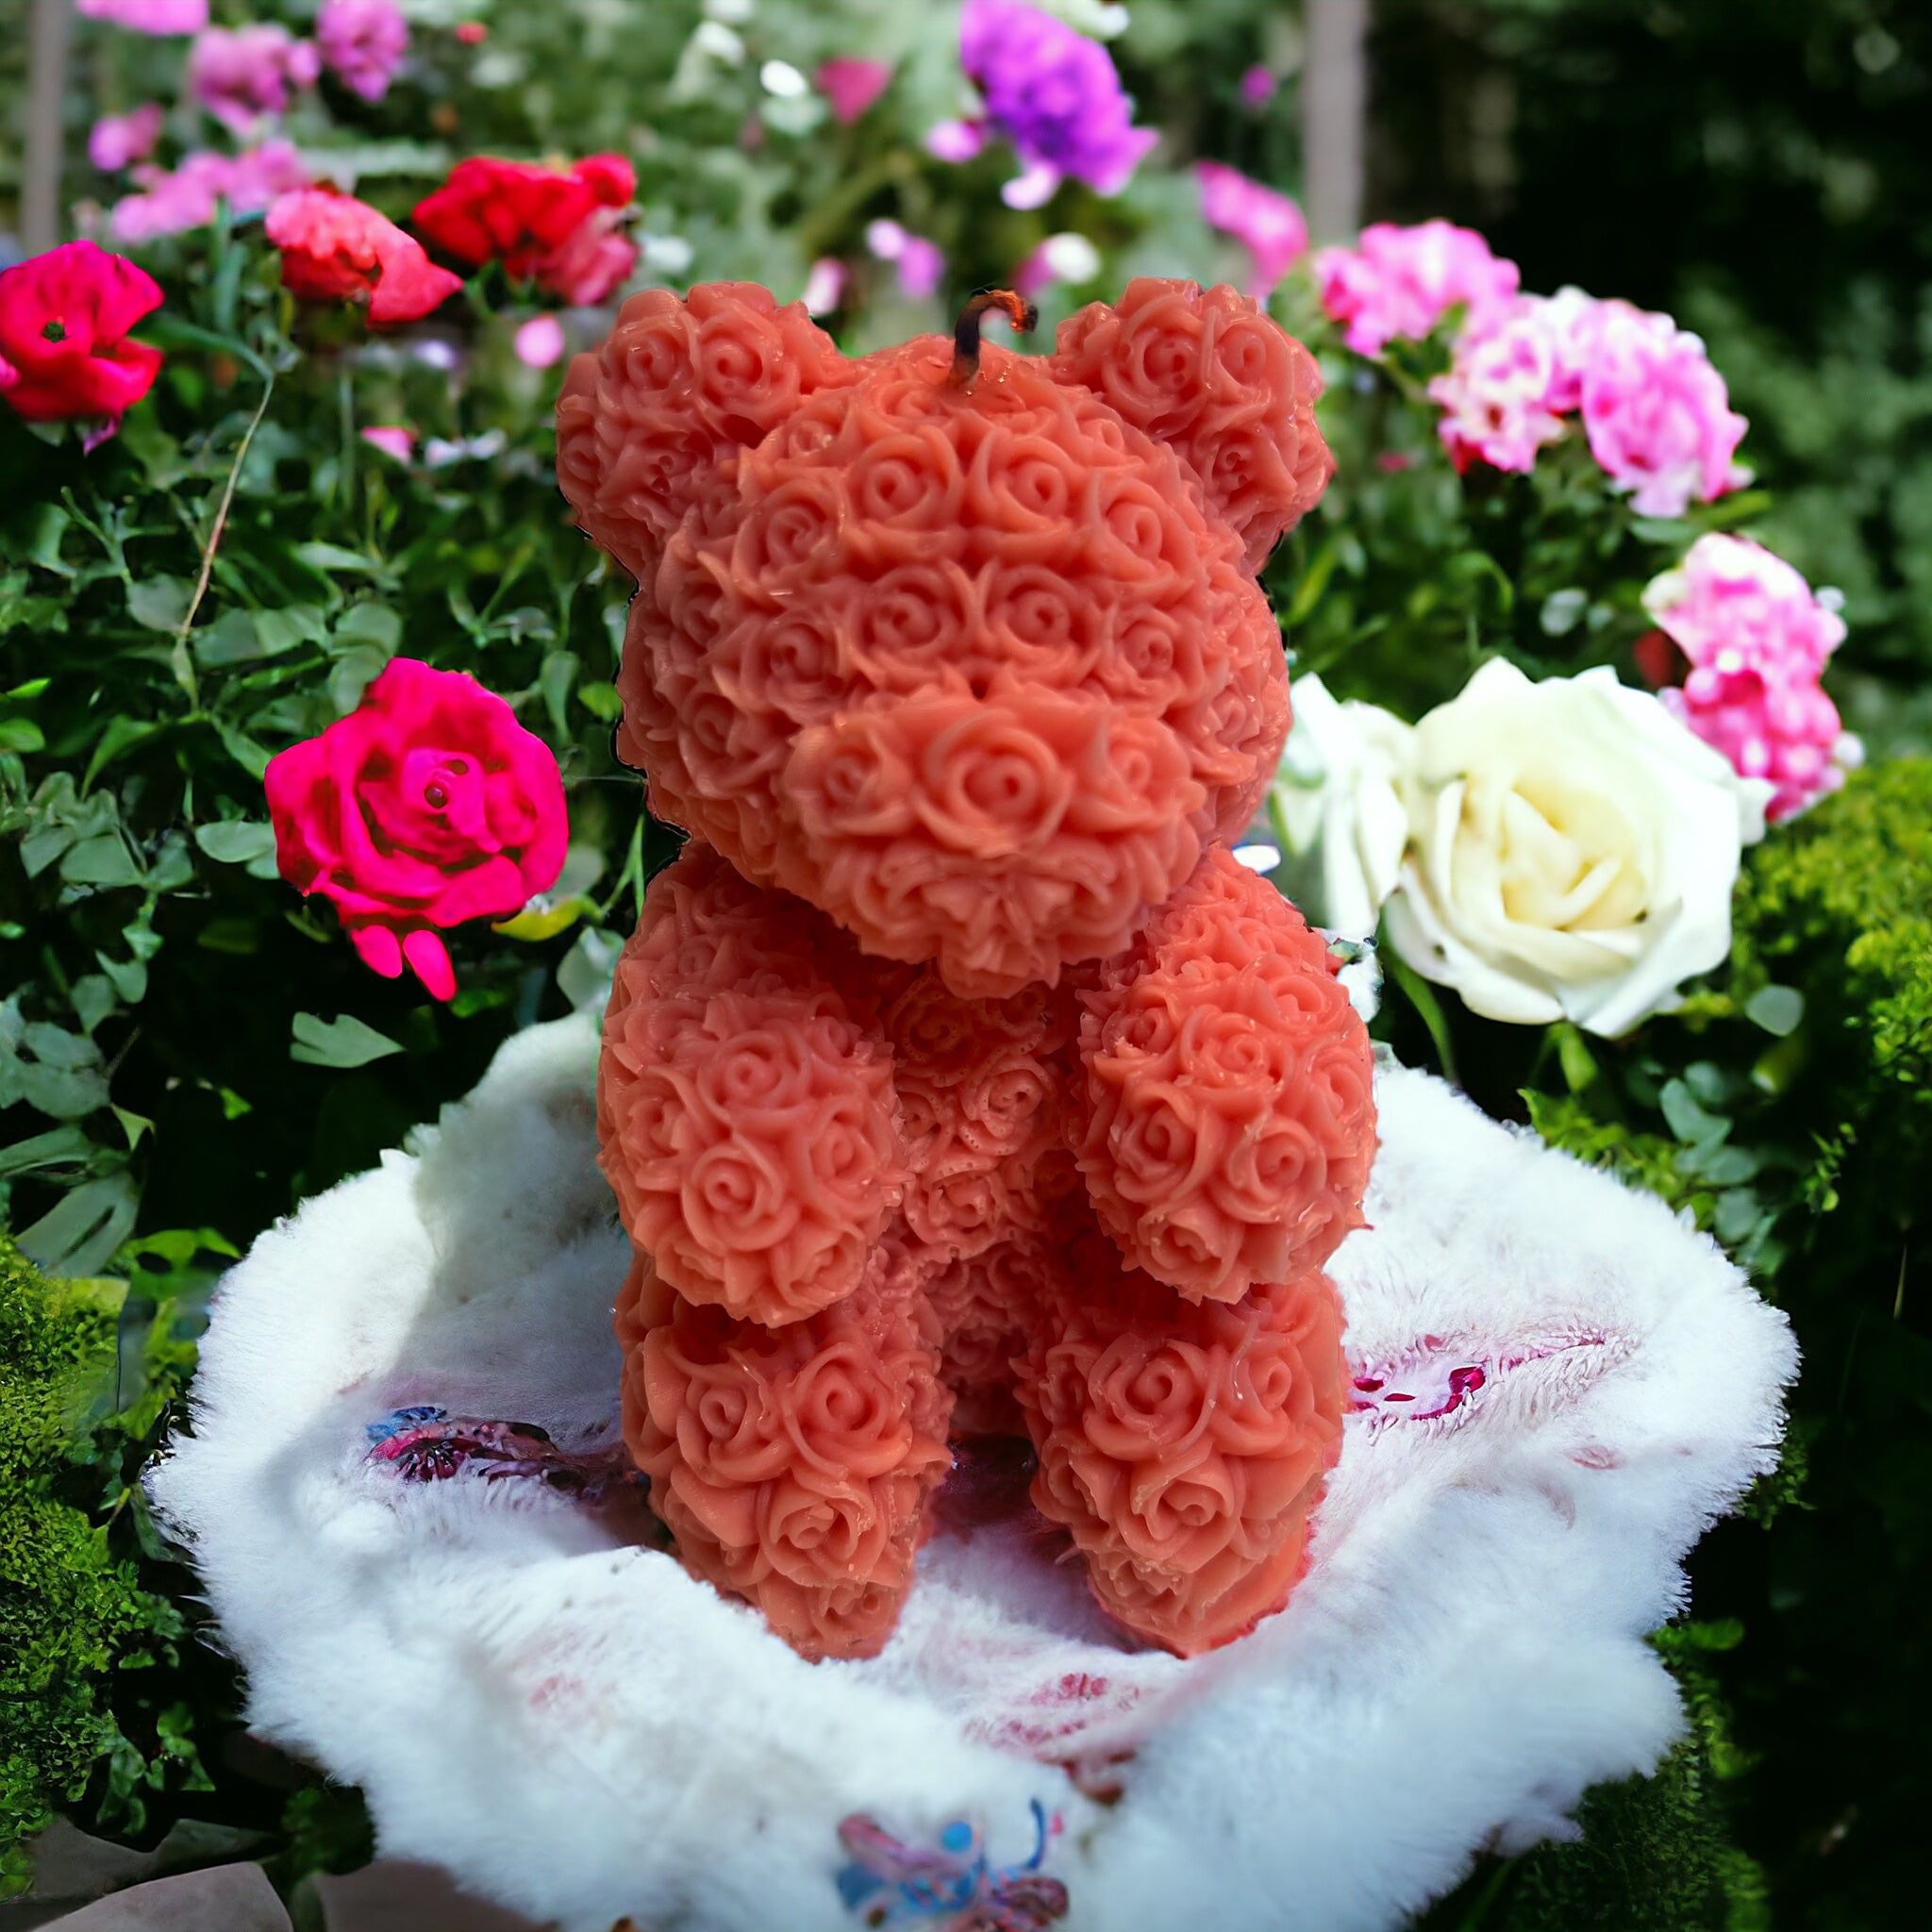 Teddy Bear Hug Me